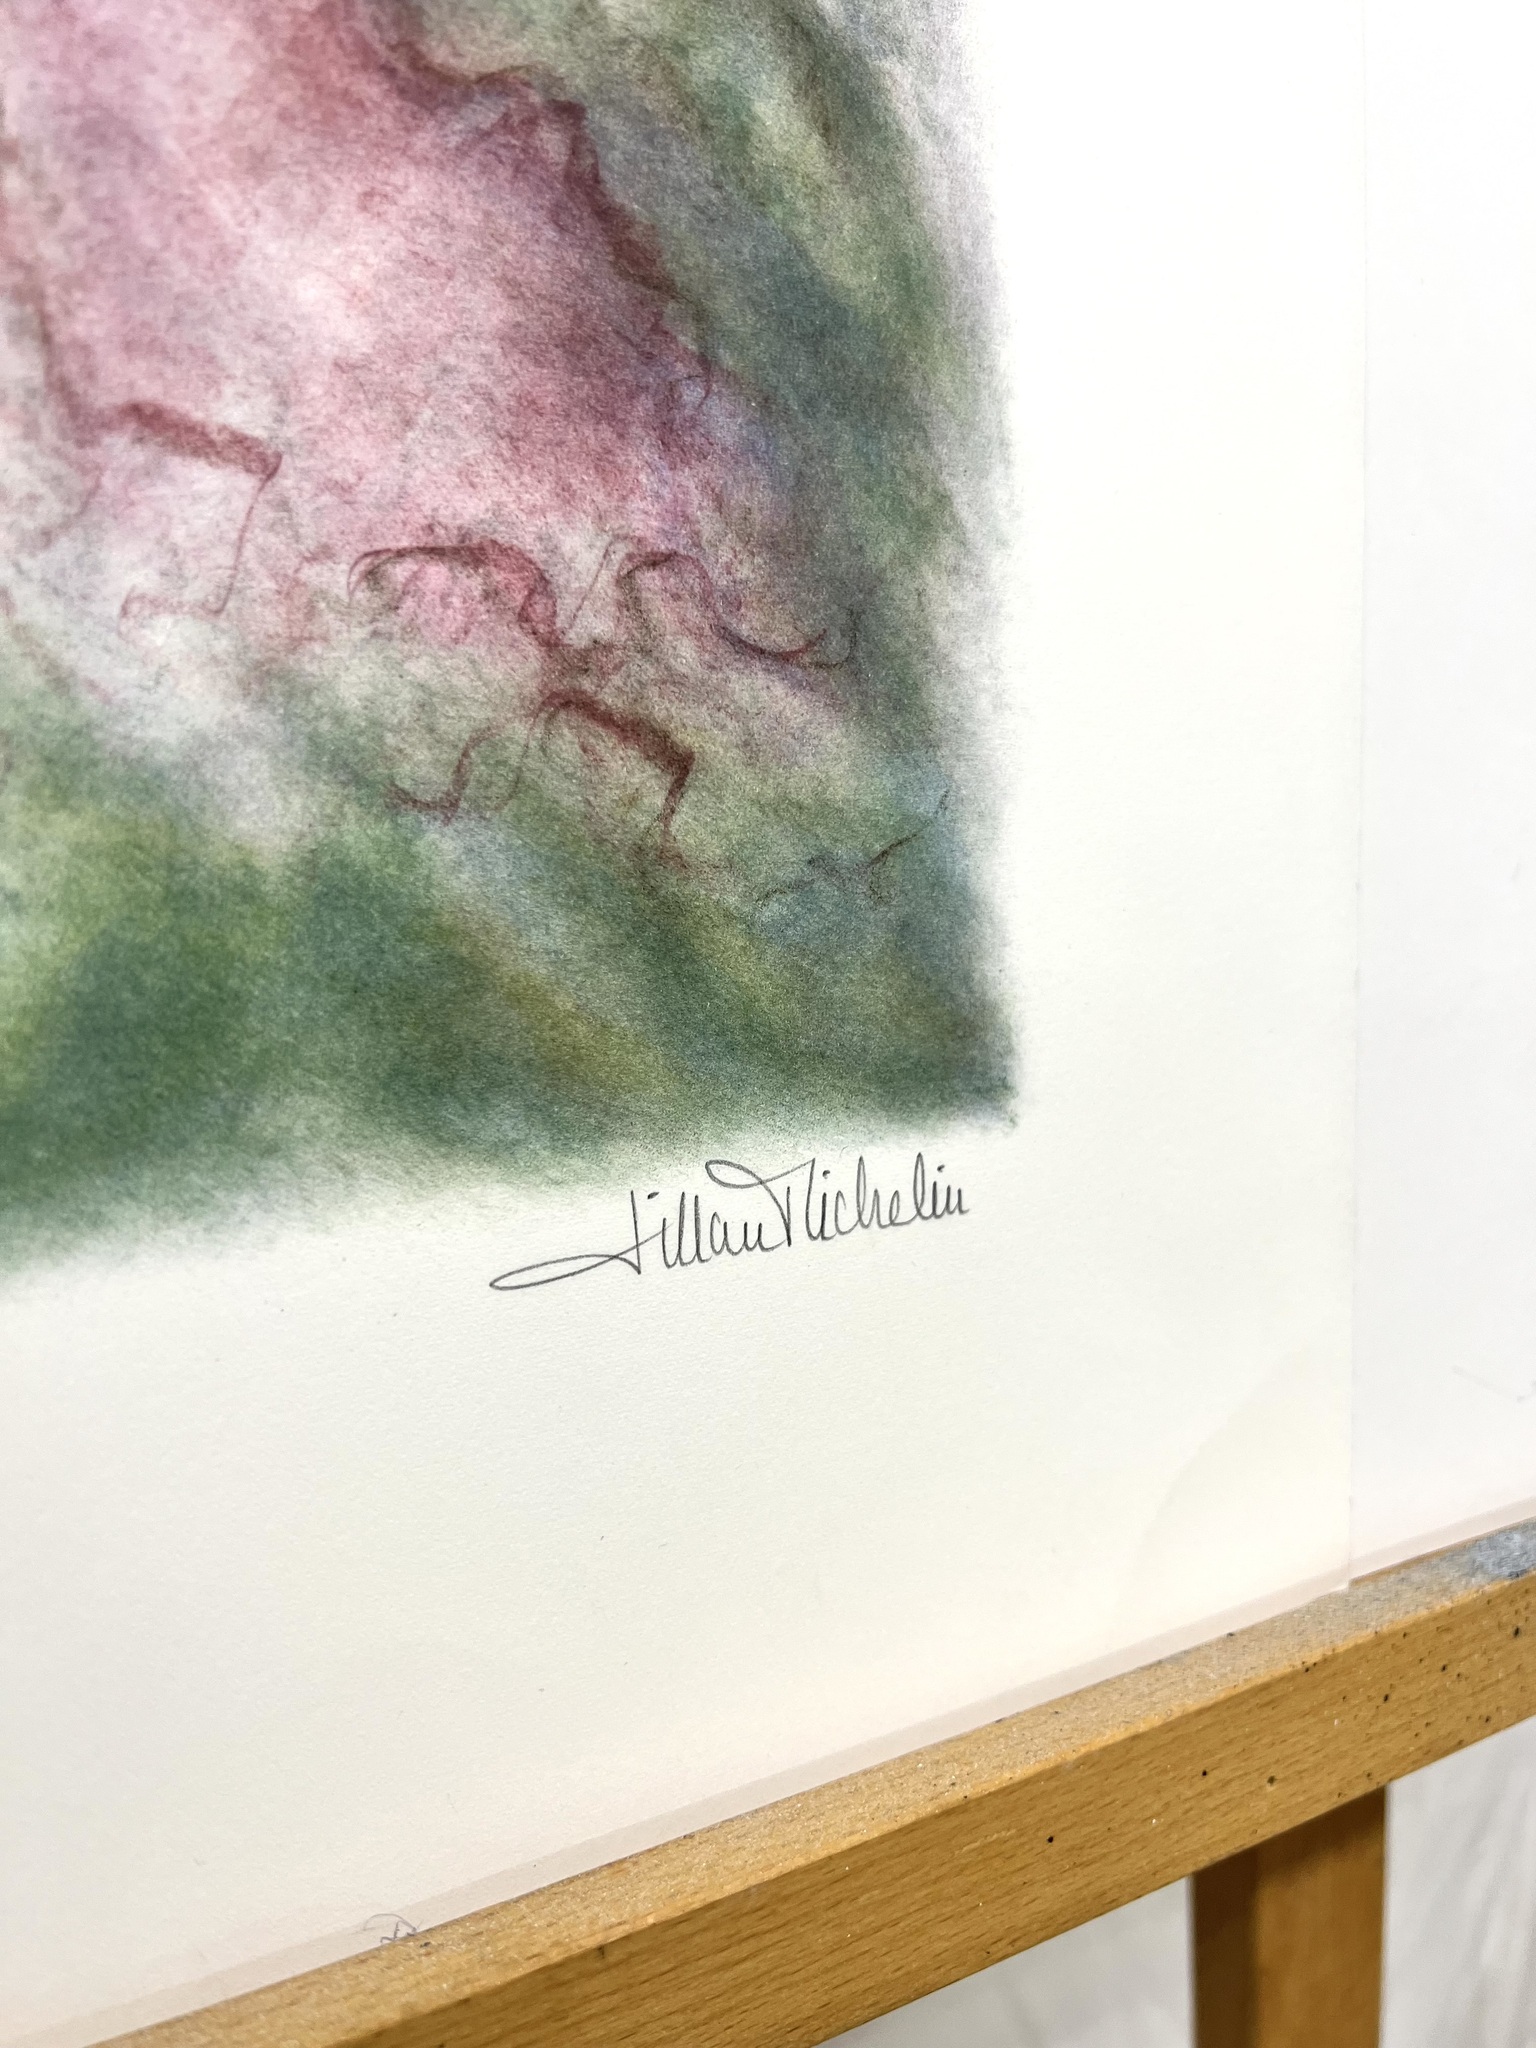 Lillian Michelin, litografi, signerad, numrerad 168/290. 31,5x42 cm